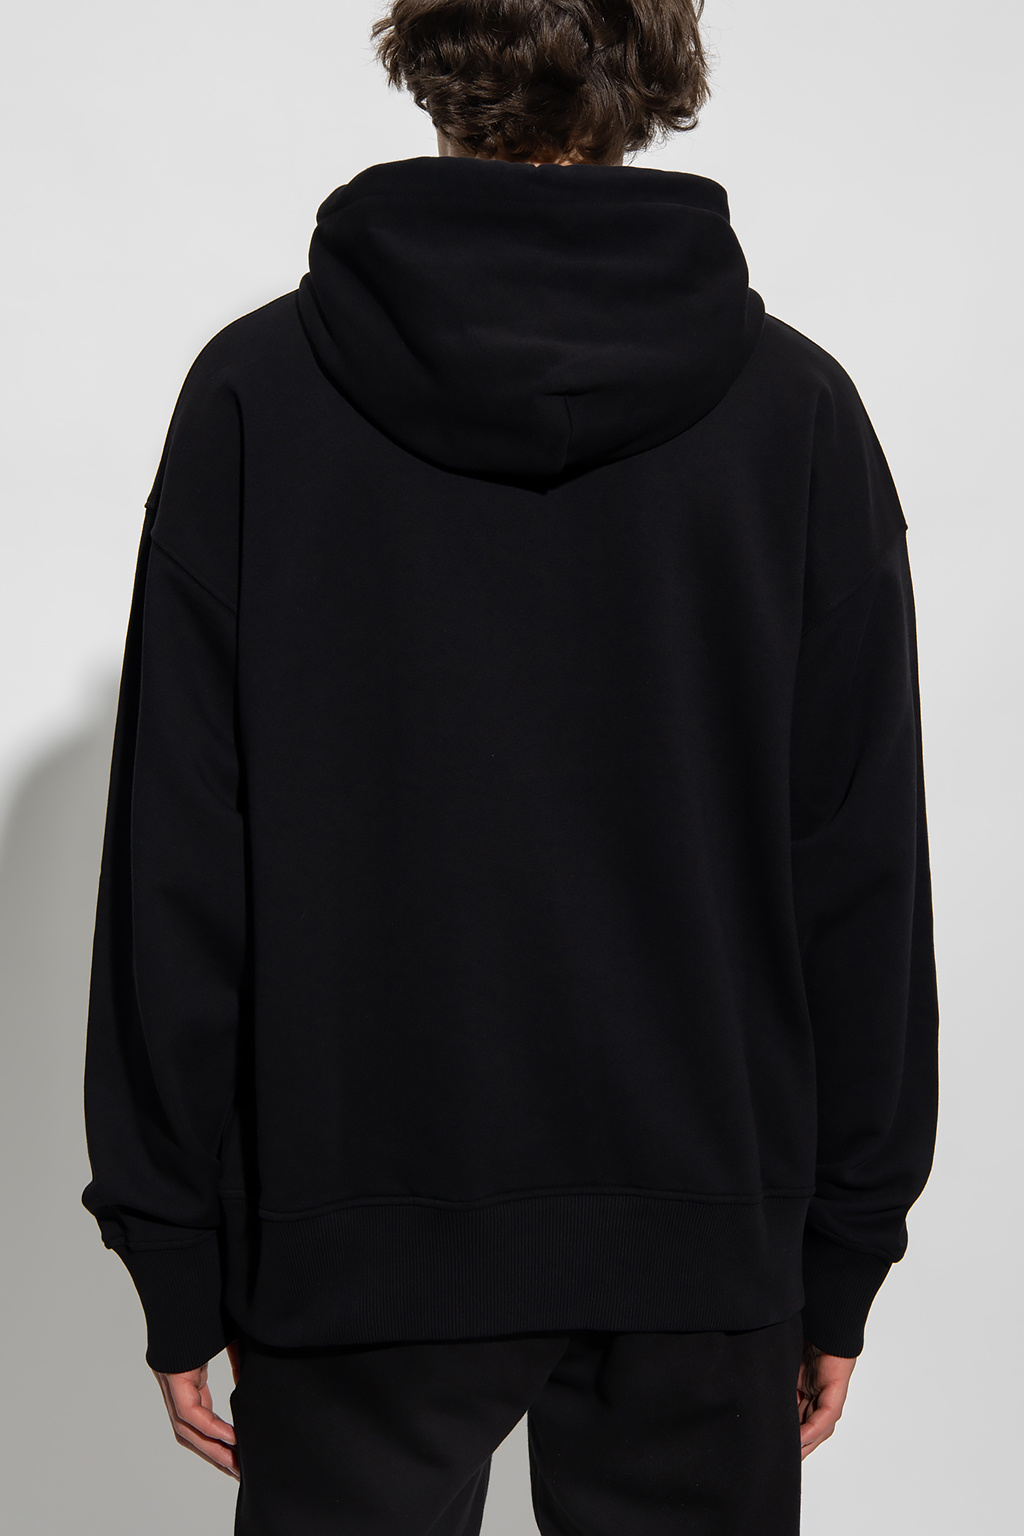 Pull&Bear Saint Louis hoodie in black